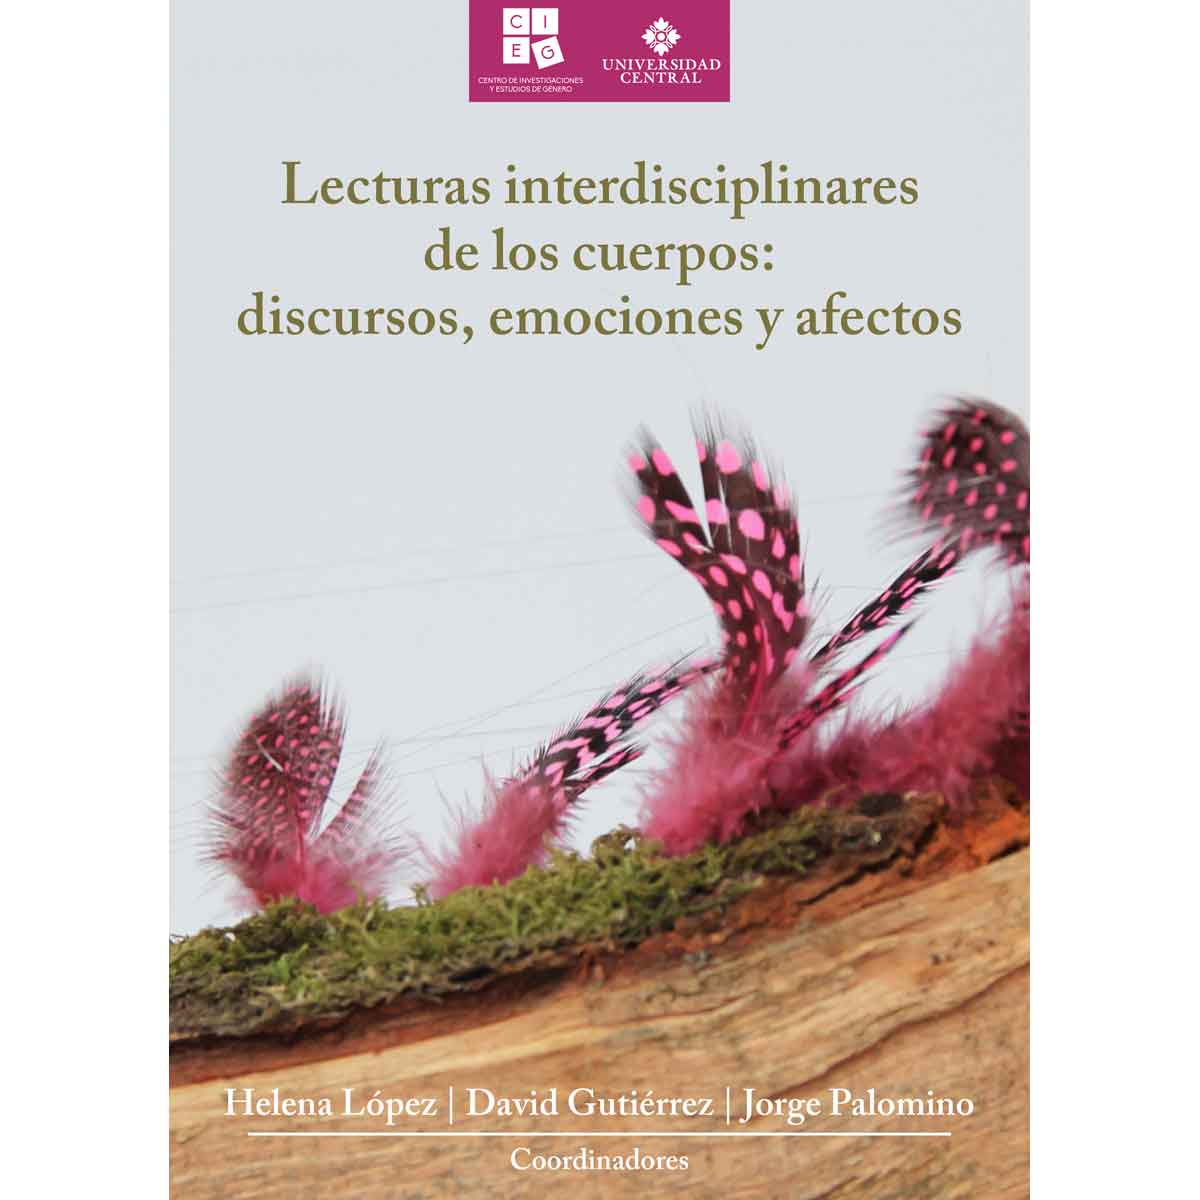 LECTURAS INTERDISCIPLINARES DE LOS CUERPOS: DISCURSOS, EMOCIONES Y AFECTOS.